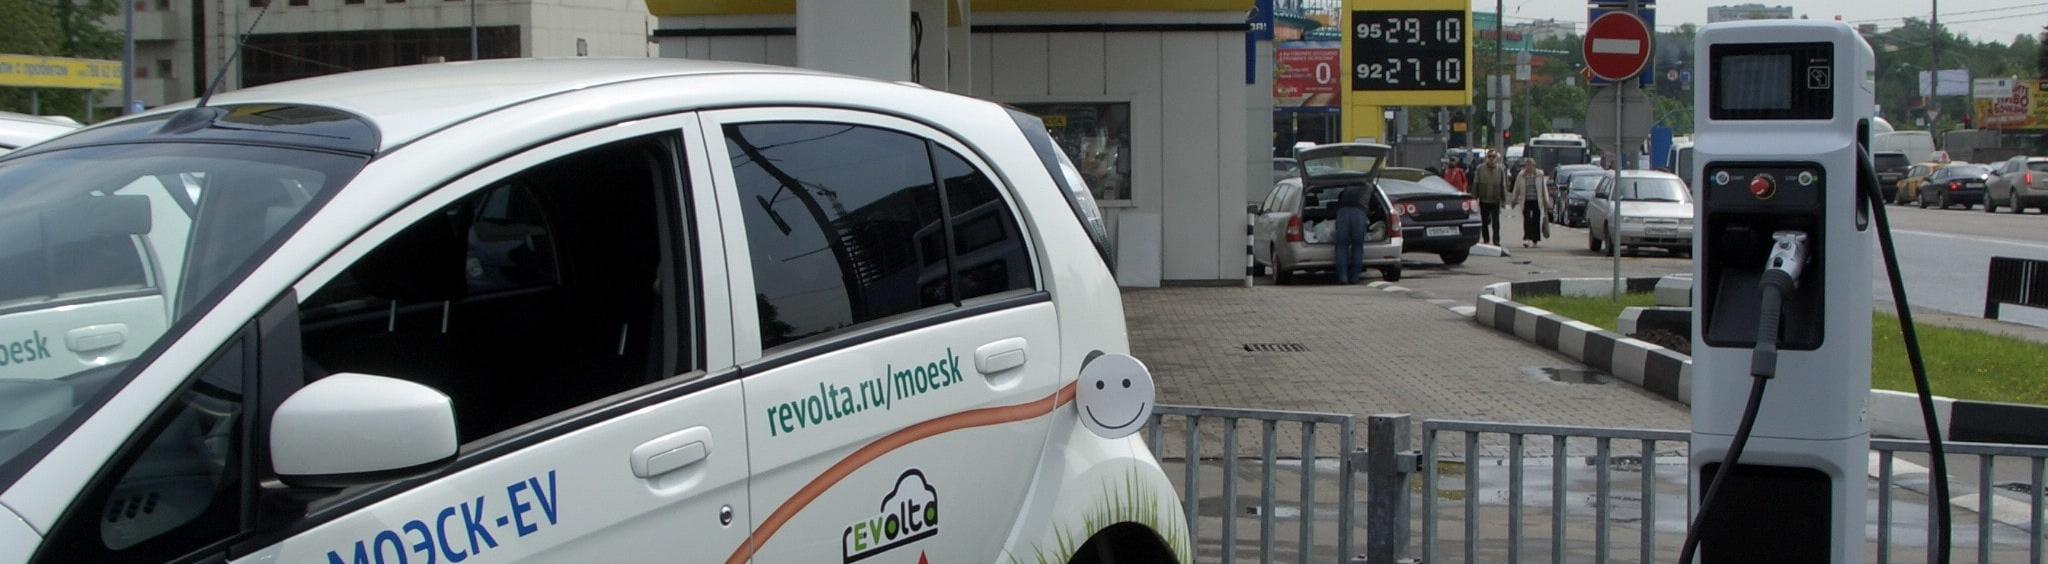 В Москве электромобили могут парковаться на улицах города бесплатно 